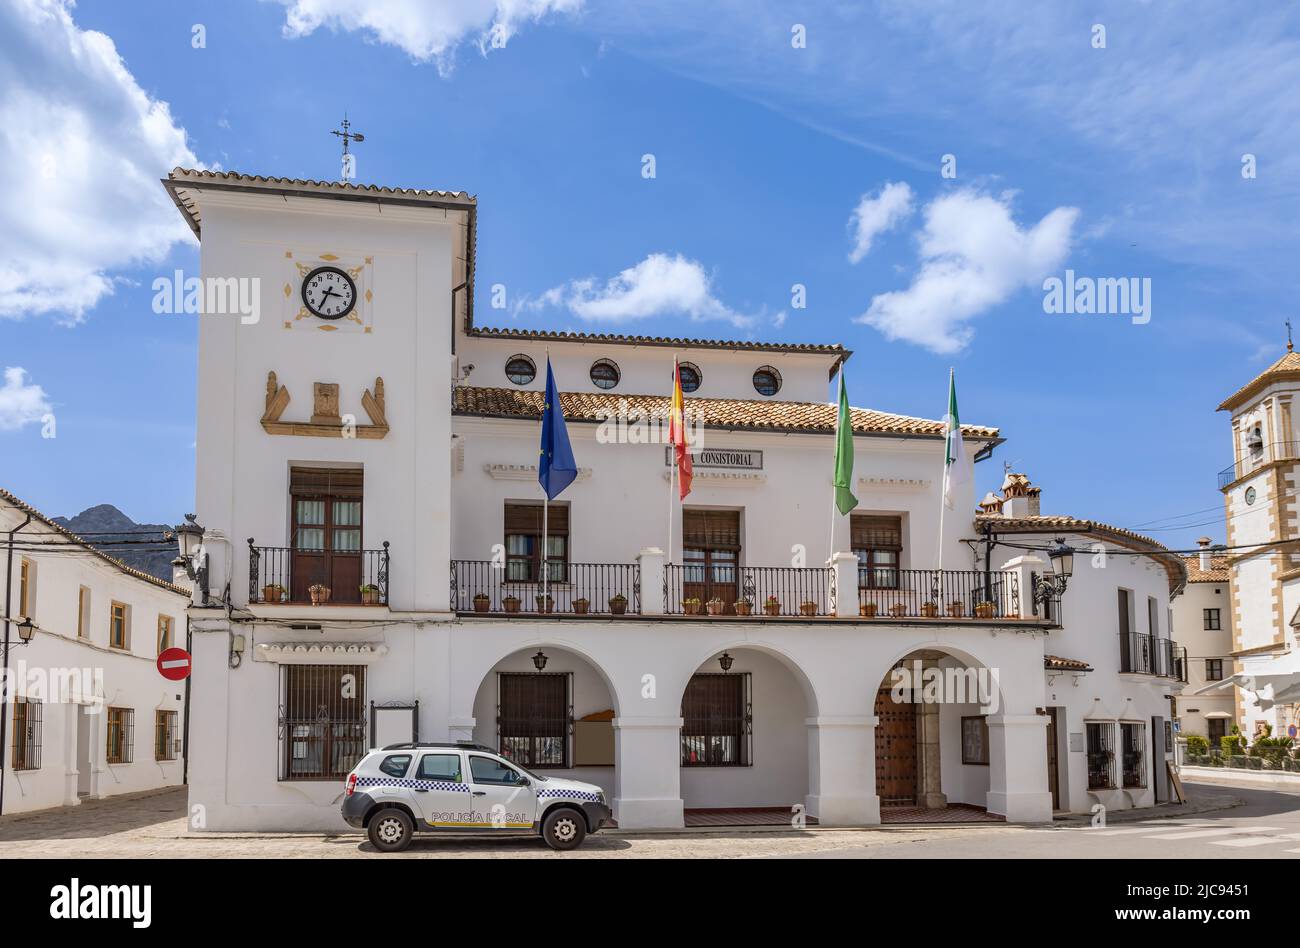 Ayuntamiento de Grazalema, considerado uno de los pueblos blancos más bellos de España, con un coche de la Policía Local (Policia Local) estacionado en la puerta y t Foto de stock